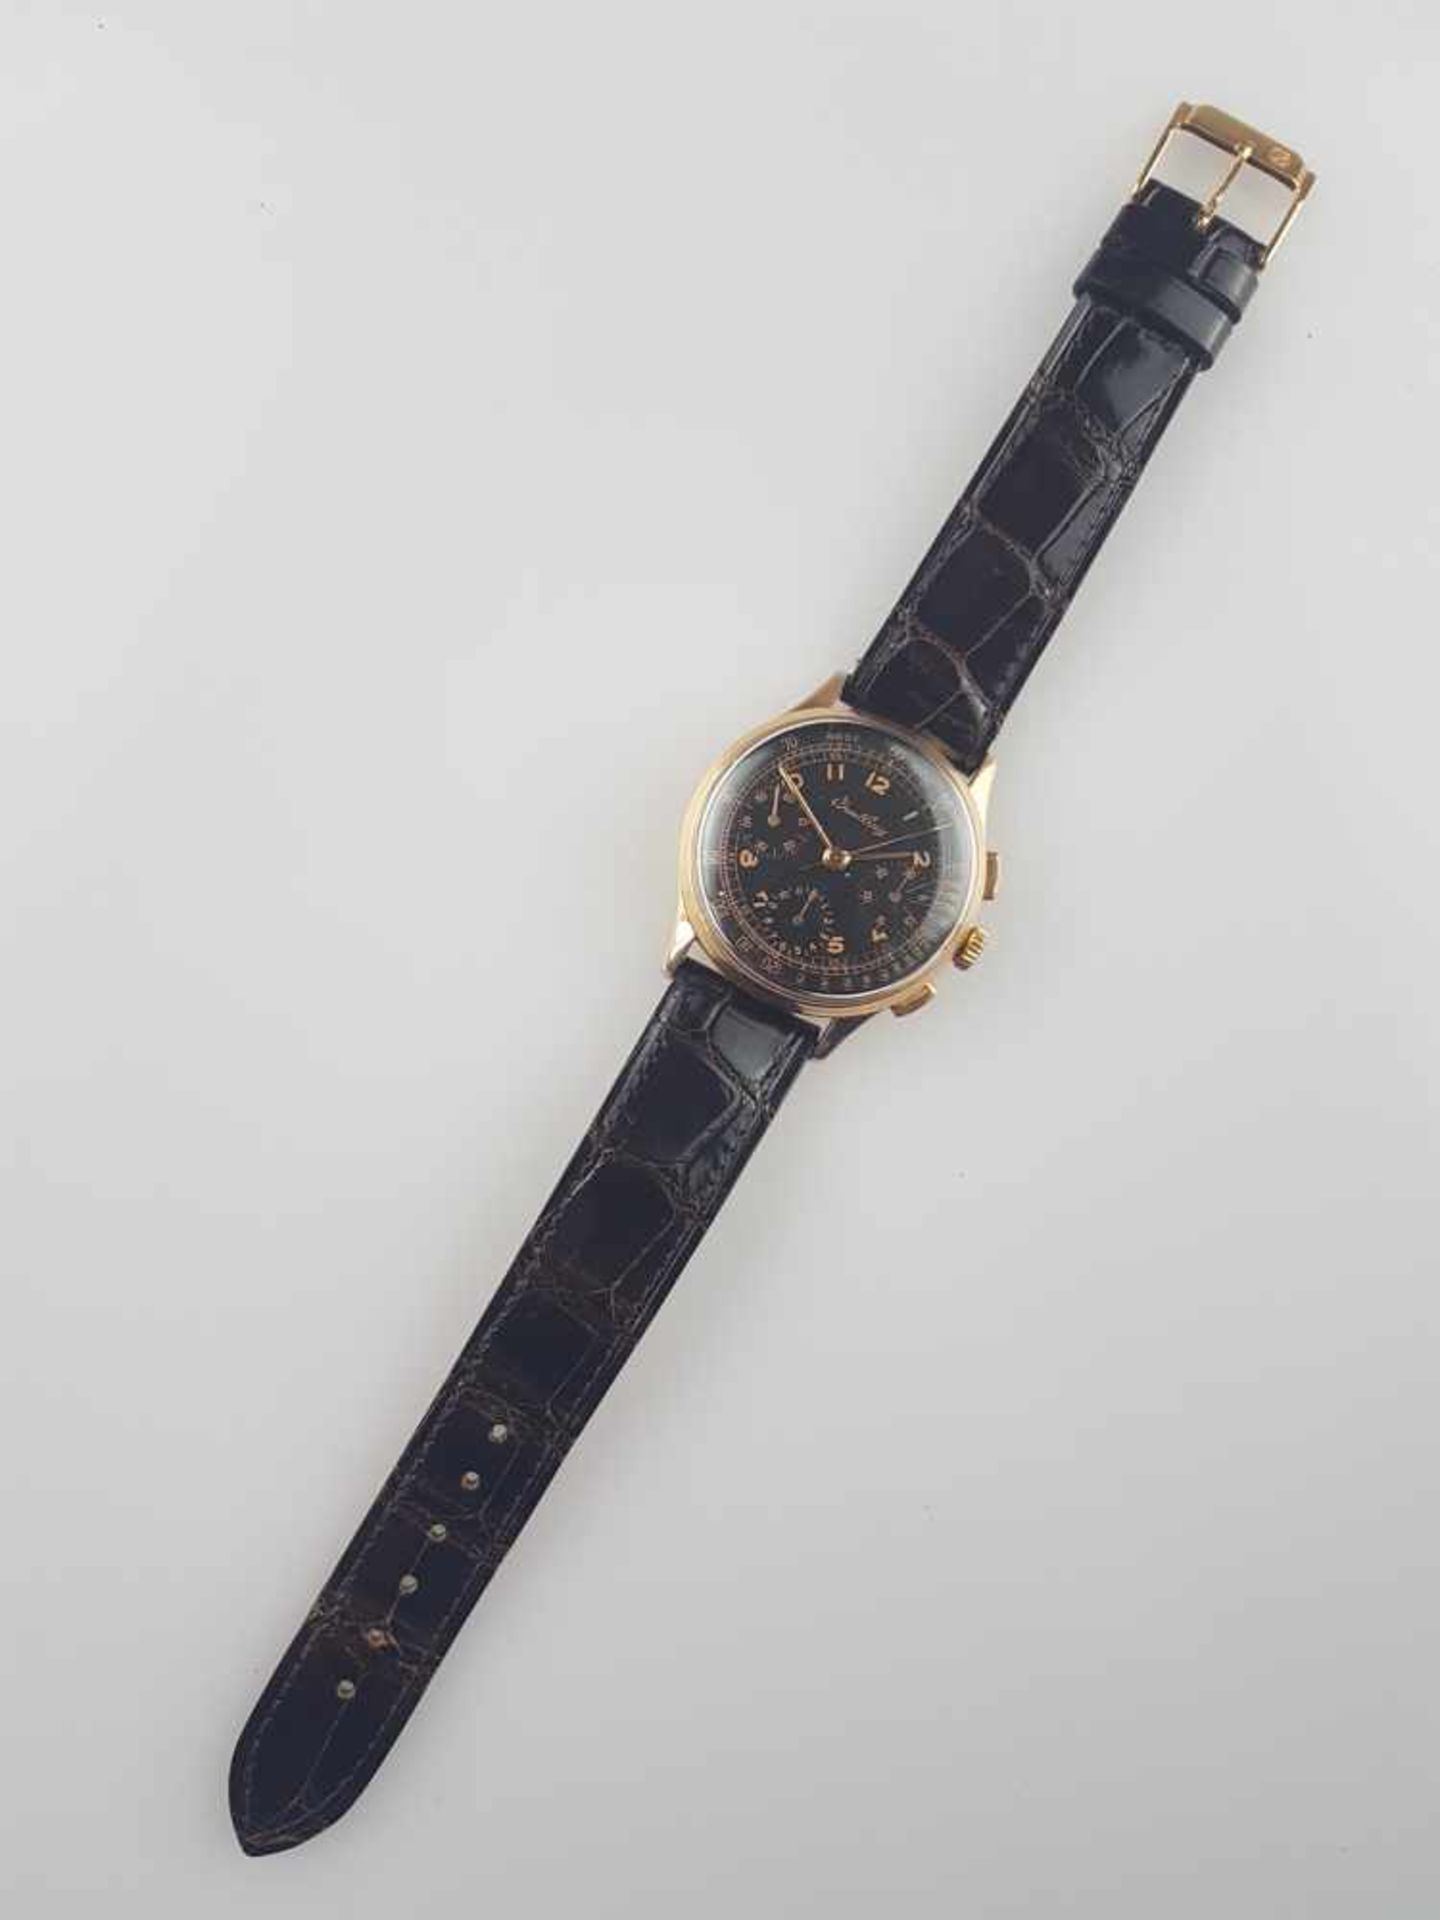 Herrenarmbanduhr - Breitling Schaltrad-Chronograph in Gelbgold 750/000, 1940-50er Jahre, Gehäuse, - Bild 2 aus 7